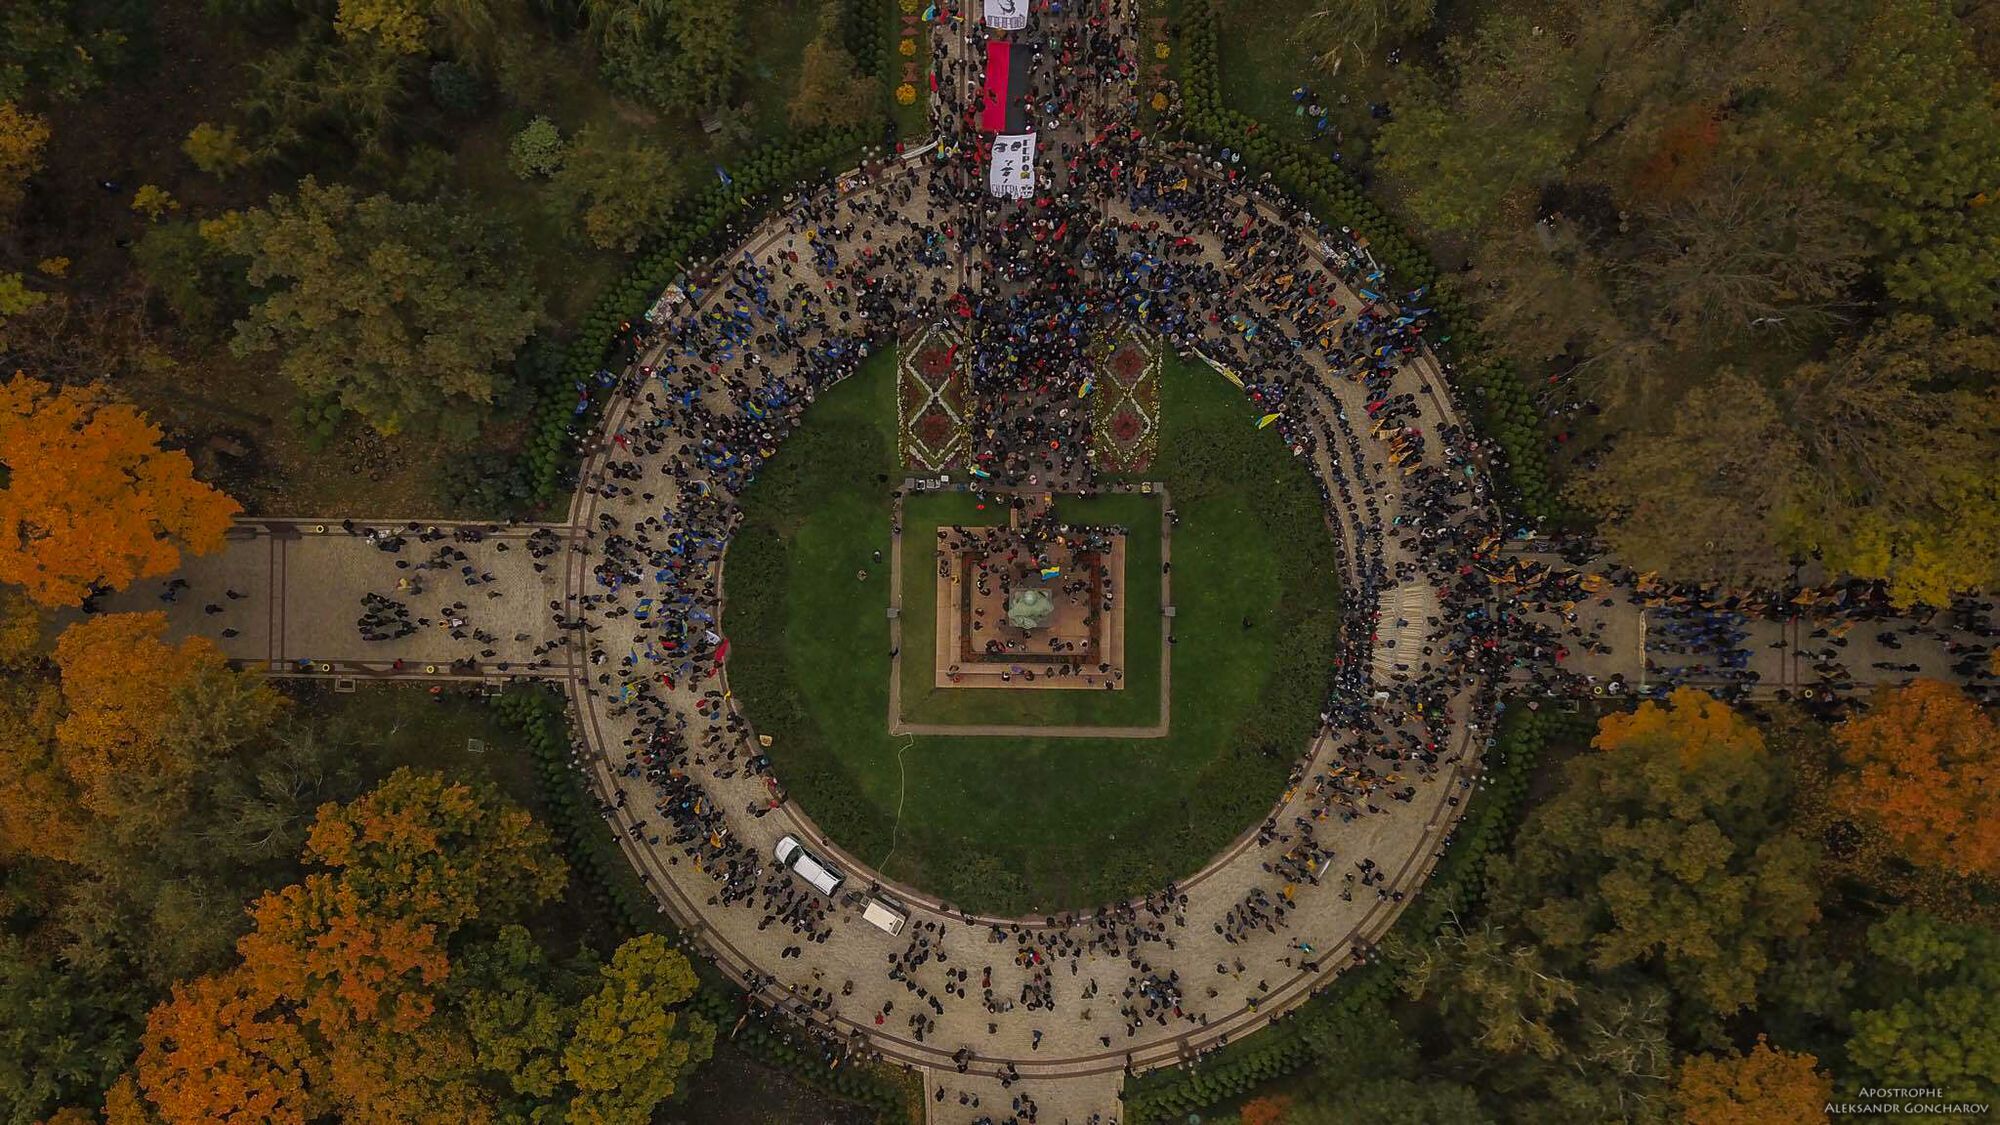 Марш УПА в Киеве с высоты птичьего полета: появились мощные фото